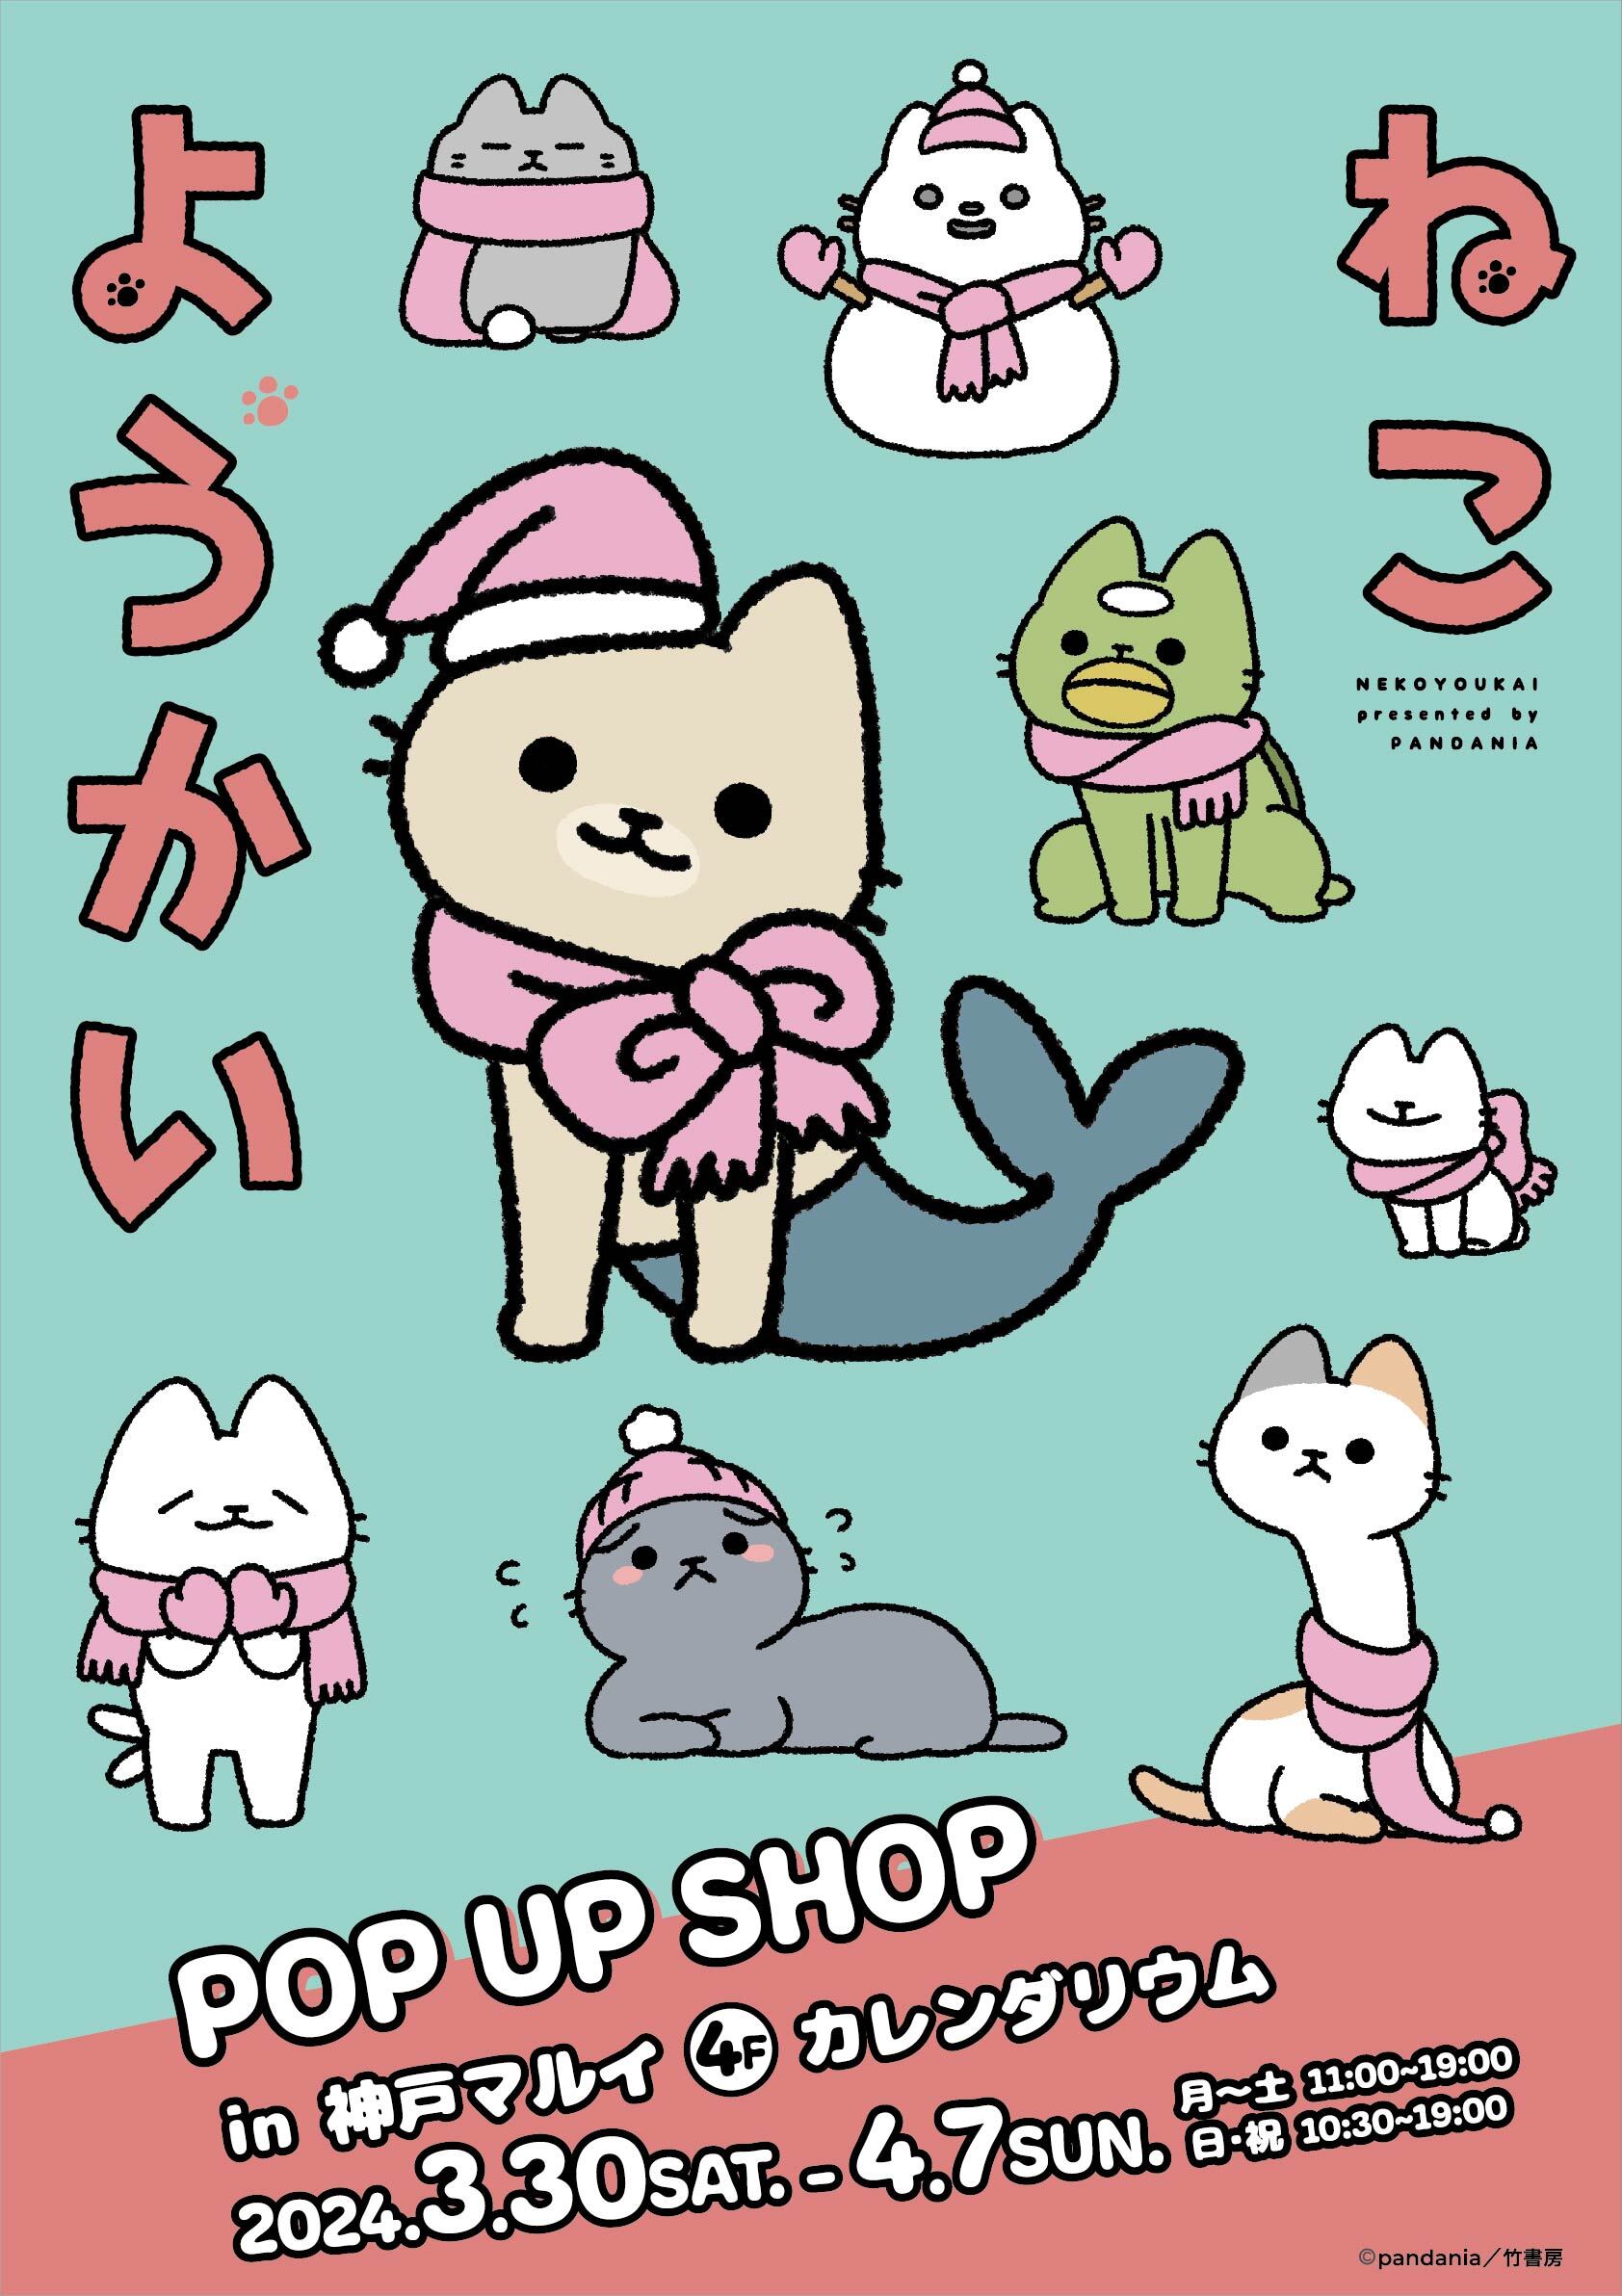 ほのぼの系ねこマンガ「ねこようかい」POP UP SHOPが兵庫県・神戸 